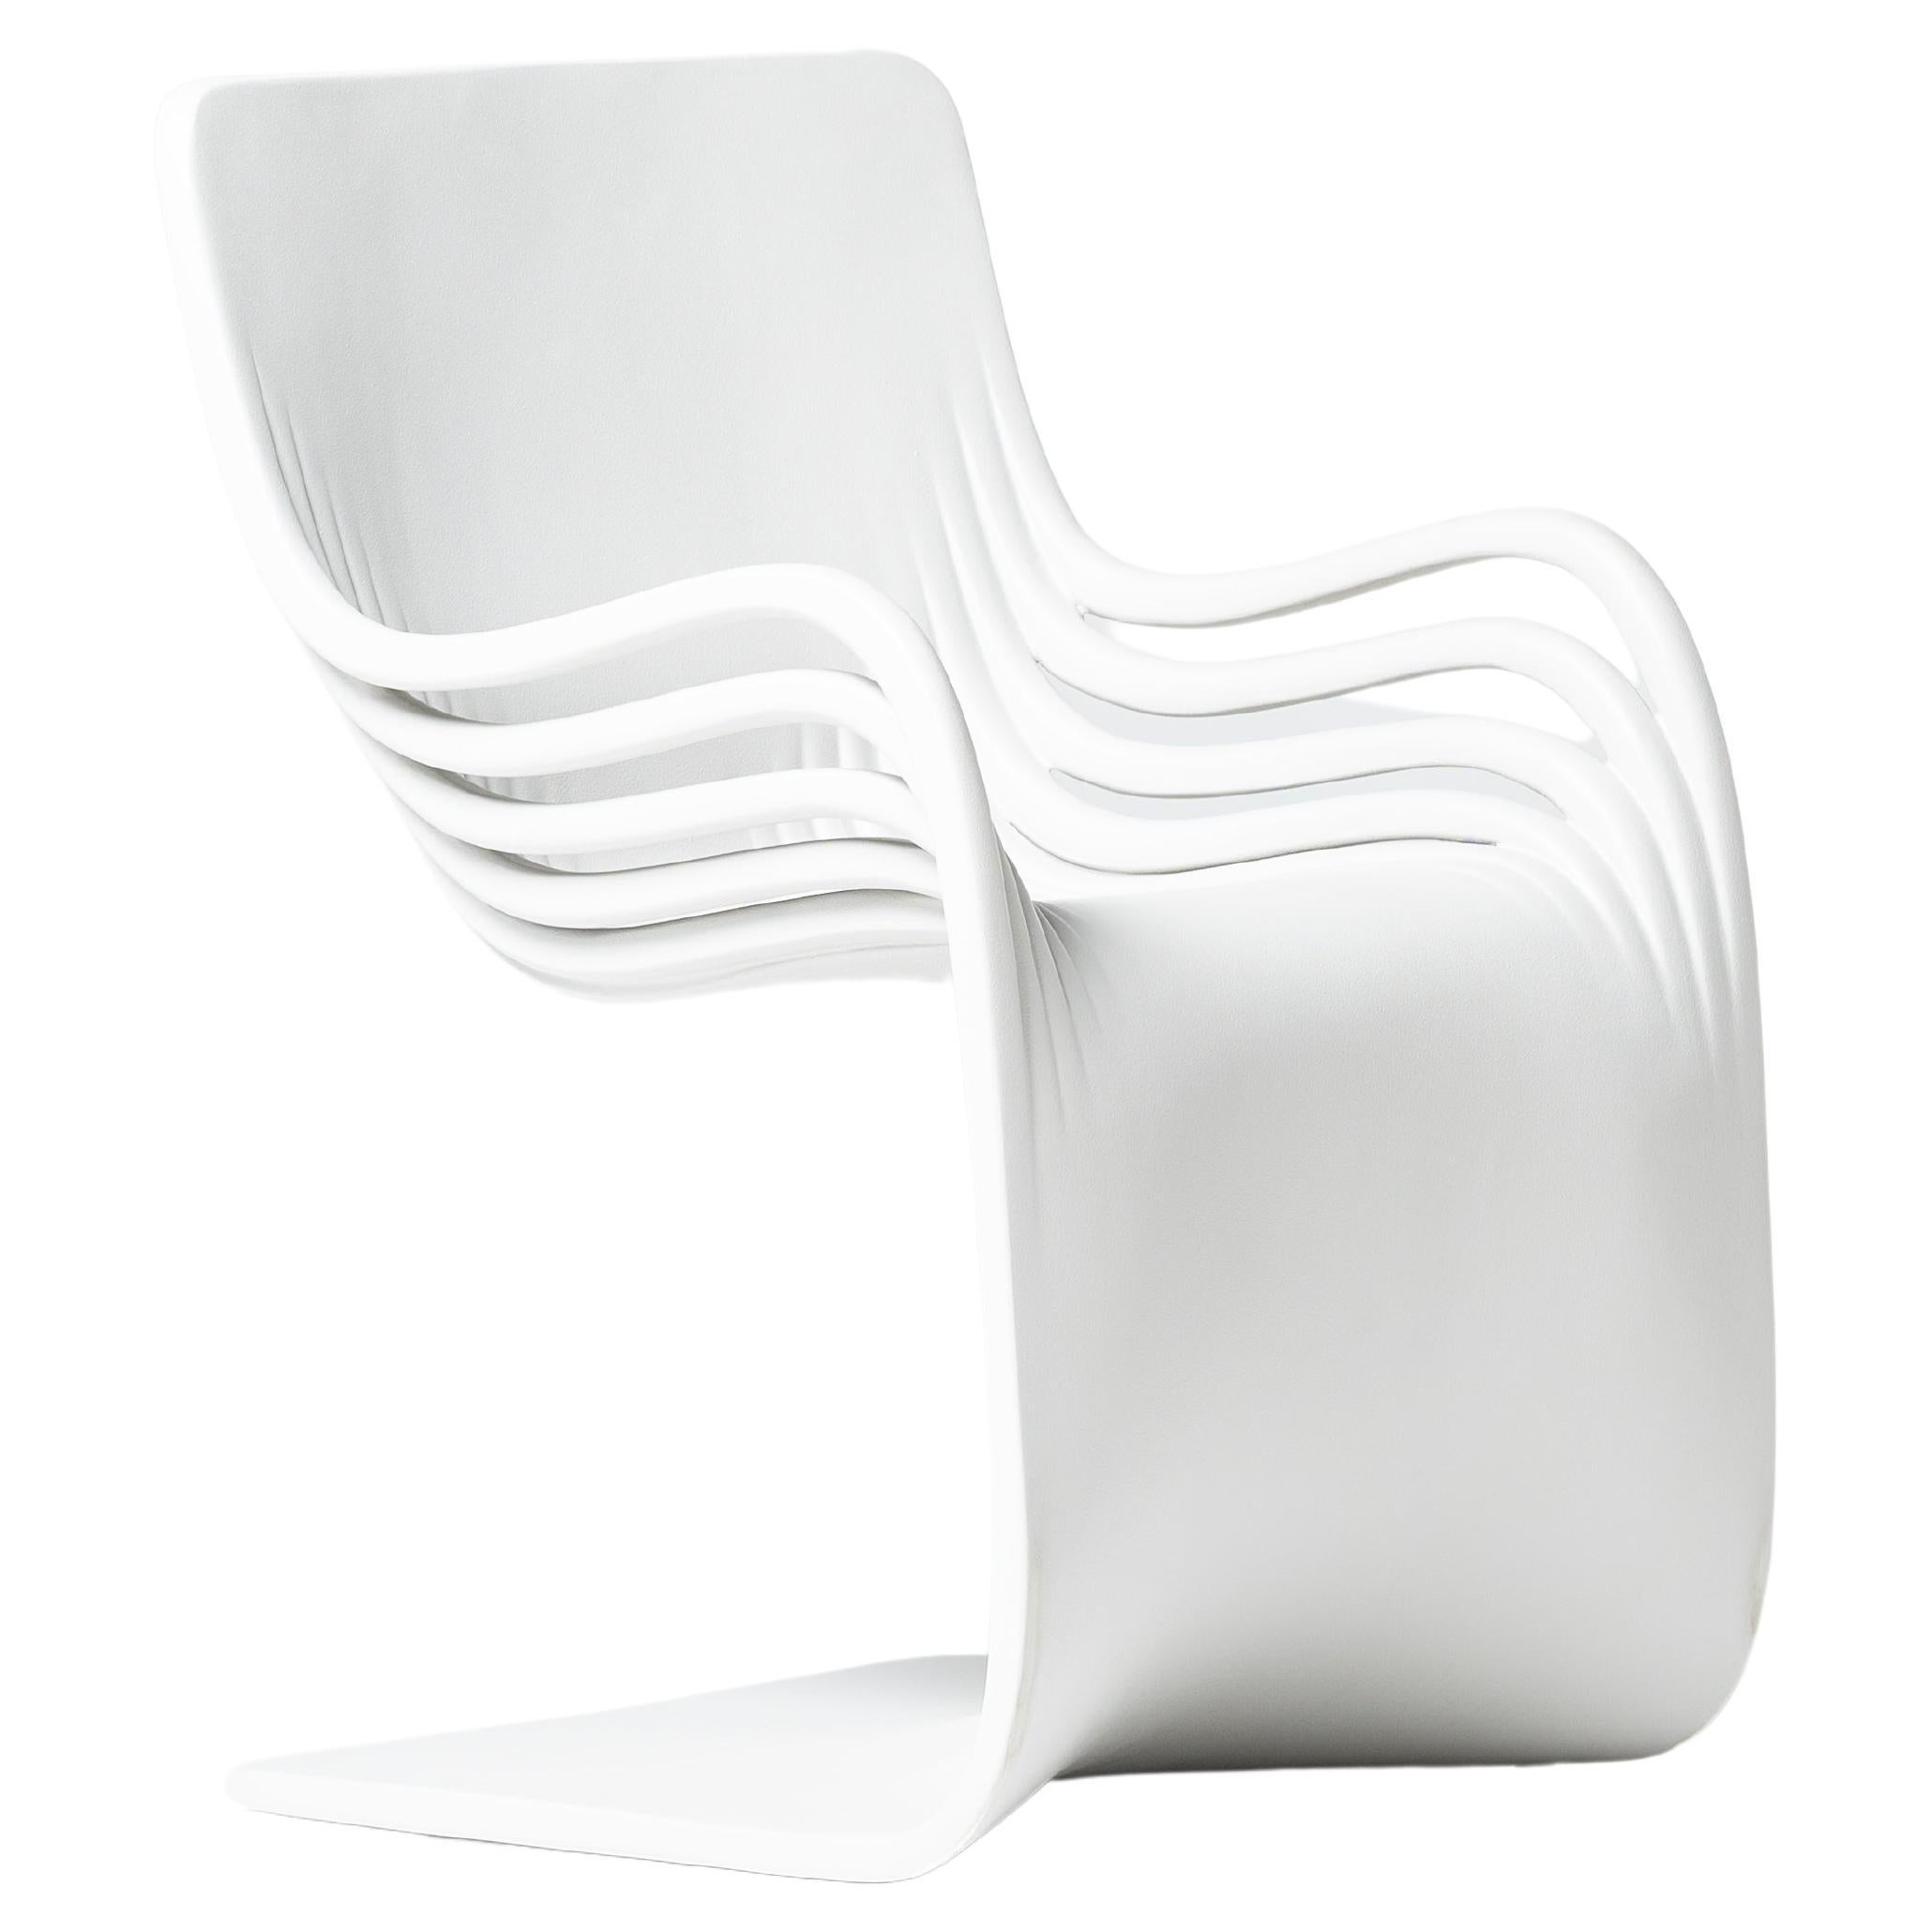  Pipo Fiber by Piegatto, une chaise contemporaine sculpturale en vente